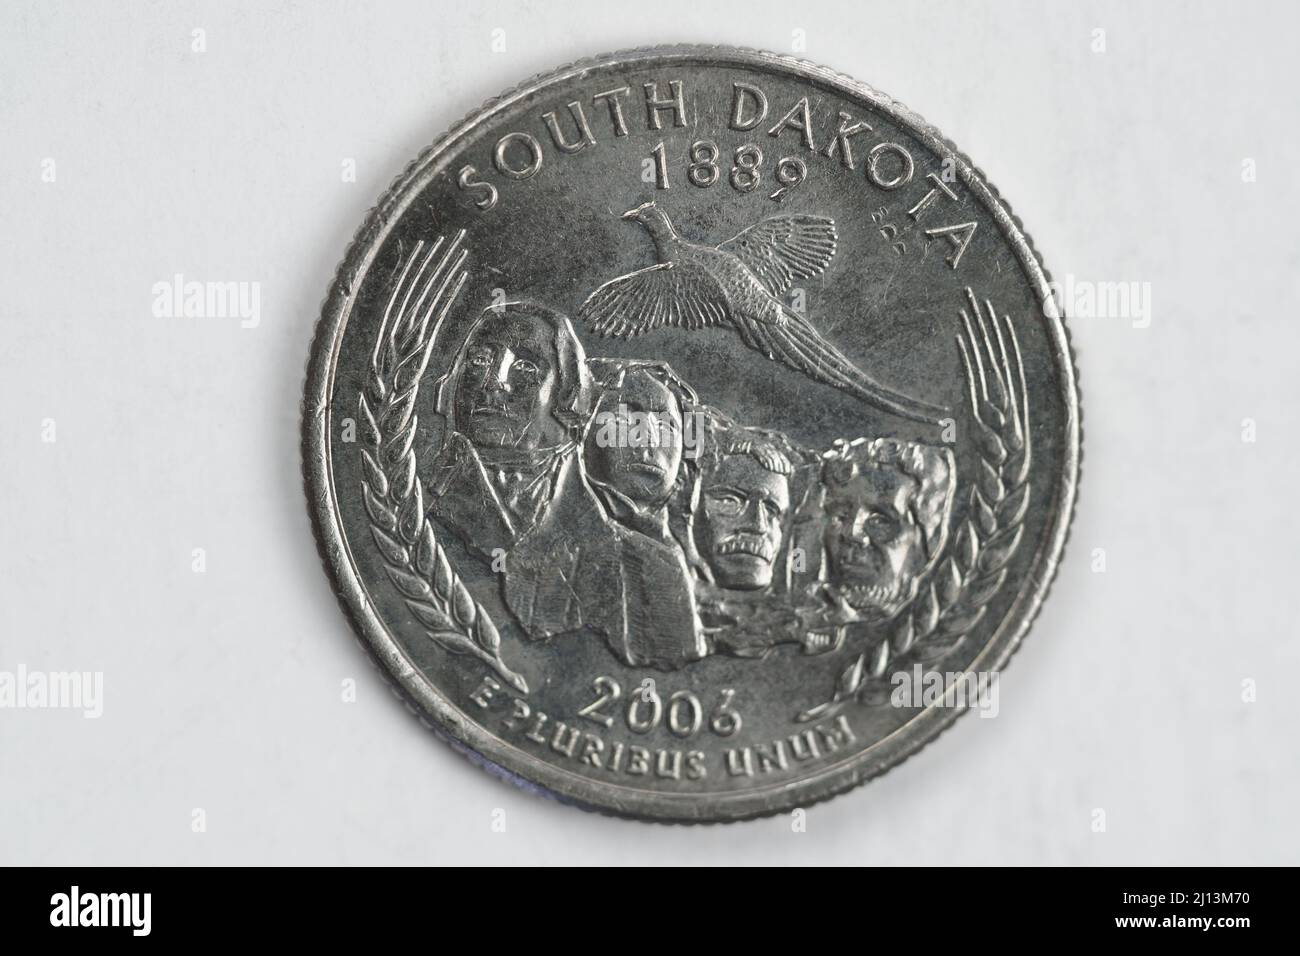 Una moneta da un quarto di dollaro (25 centesimi) con l'immagine del South Dakota (lo Stato del Monte Rushmore), USA. Foto Stock